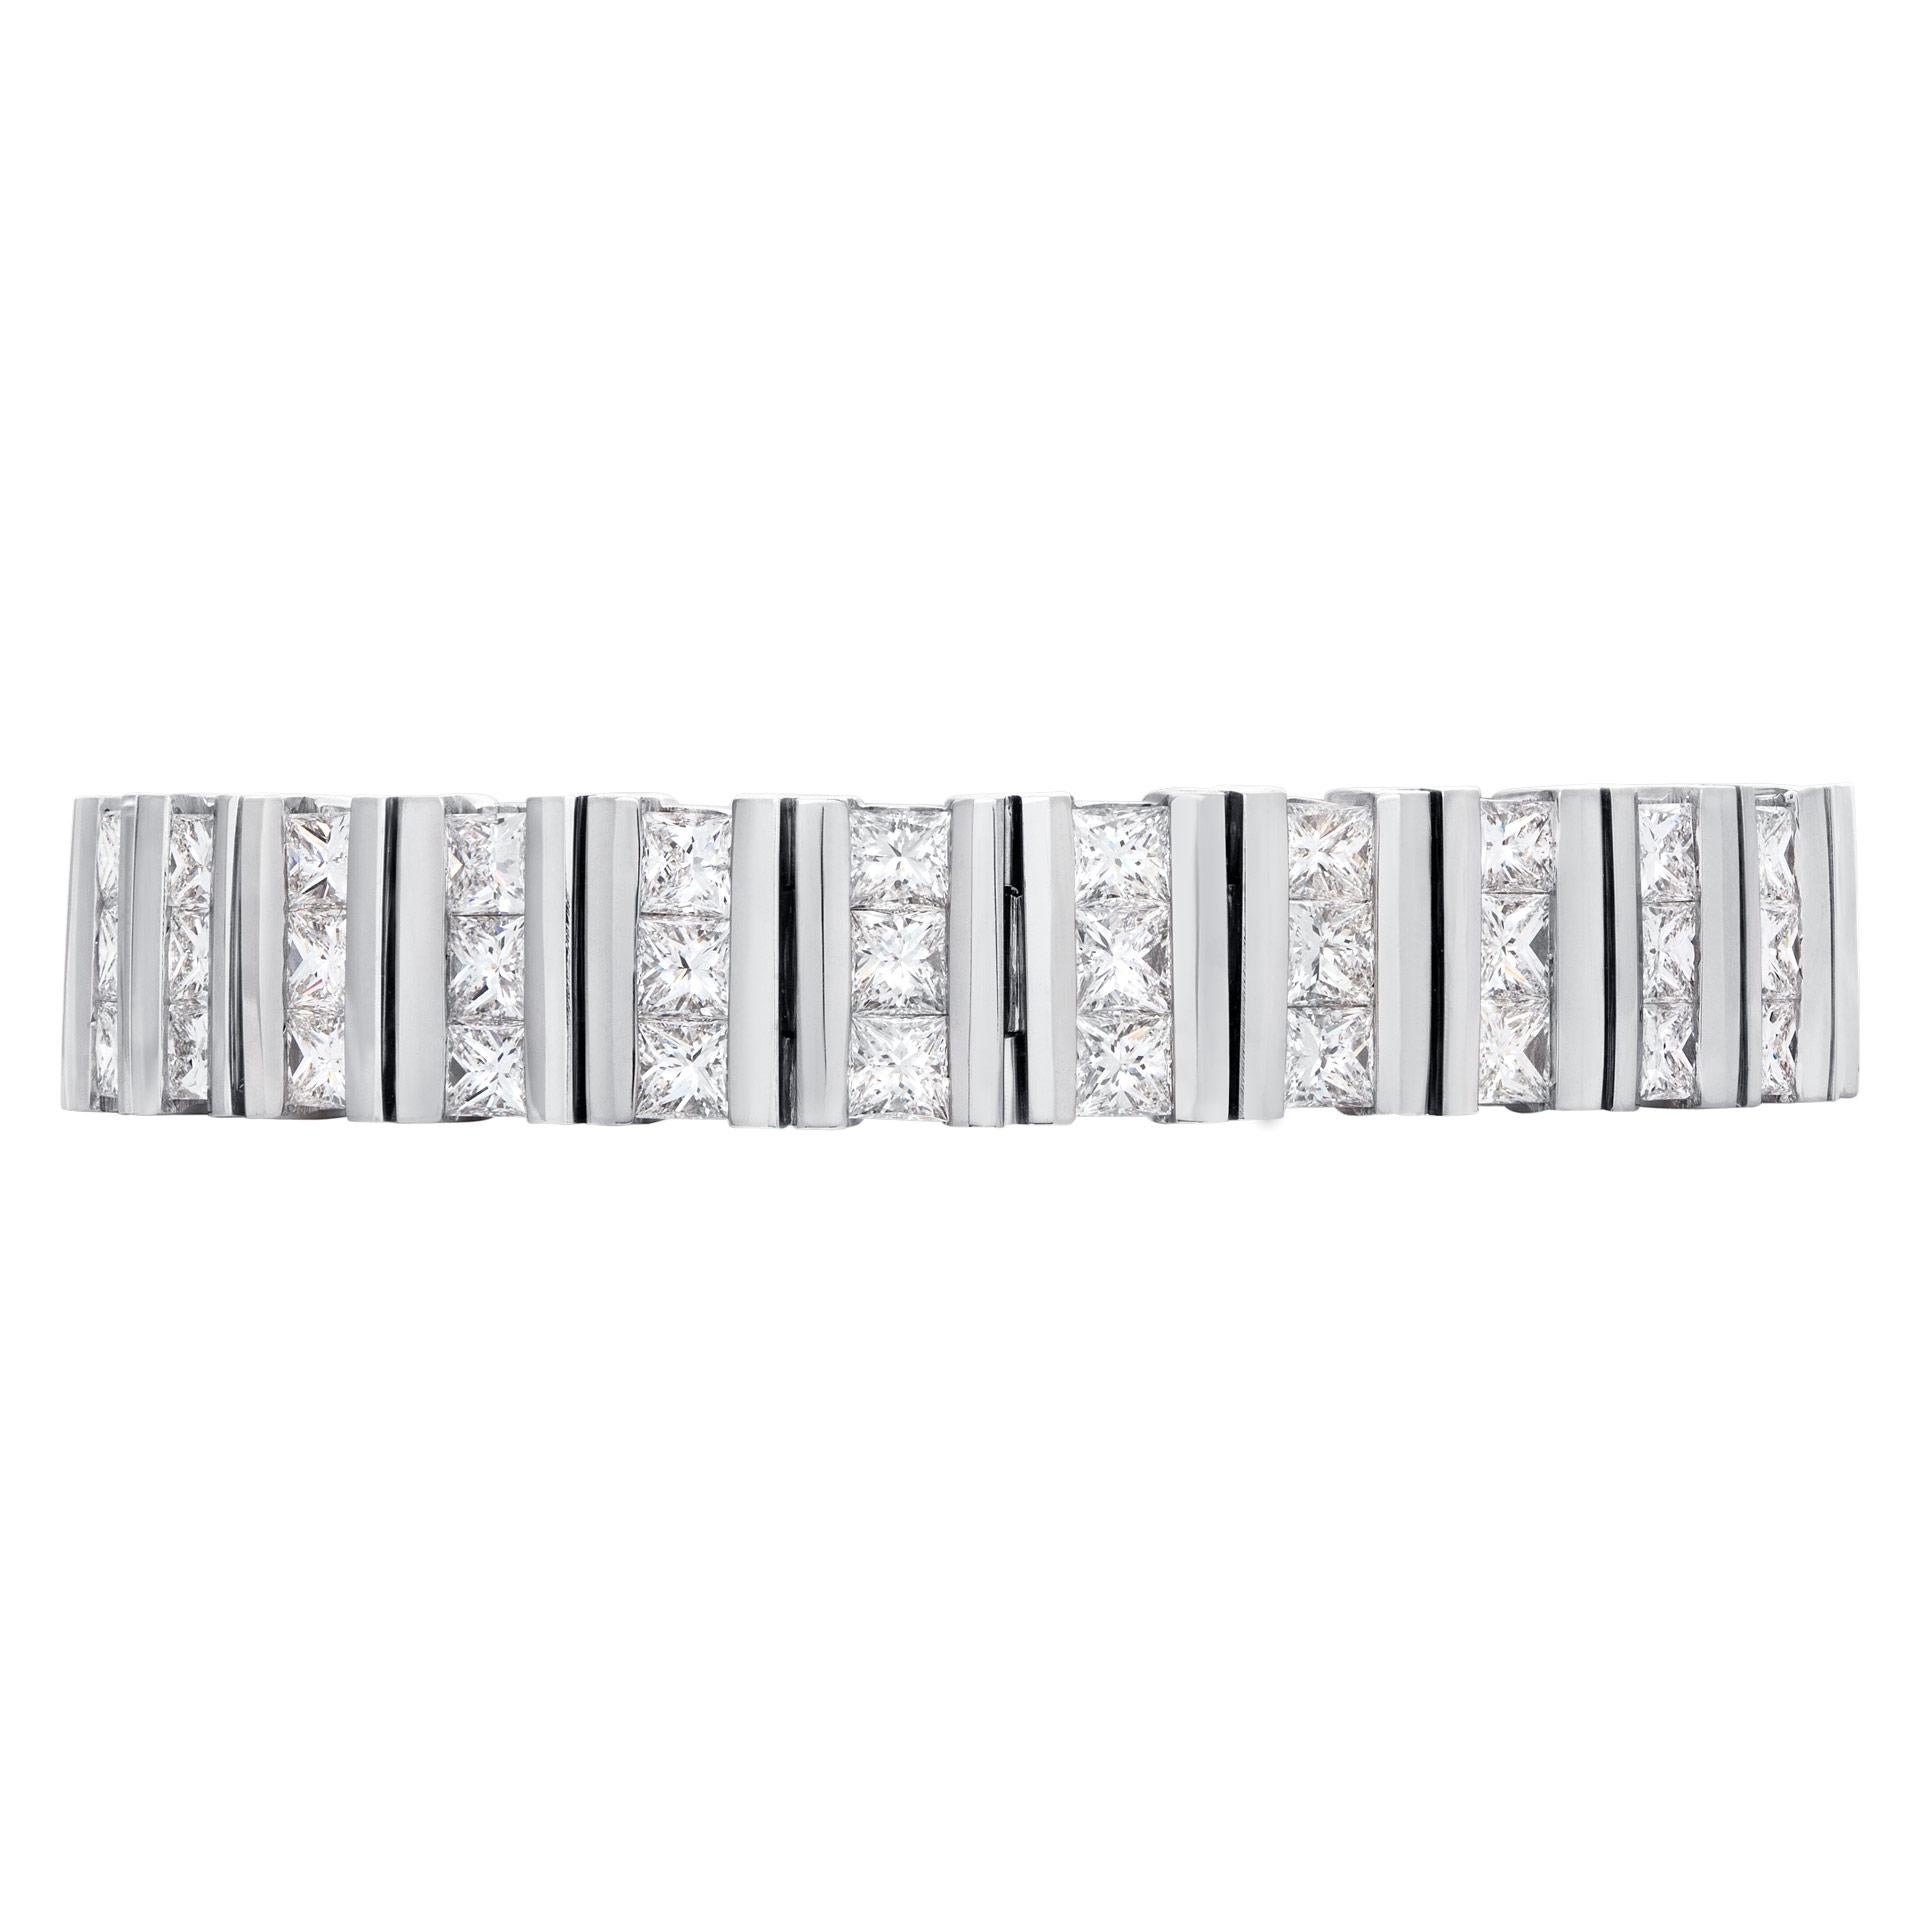 Kanal gesetzt Prinzessin geschnitten Diamanten Armband in 18k Weißgold, über 16,20 Karat in Prinzessin geschnitten G-H Farbe, VS-SI Klarheit Diamanten. Breite: 11.0 mm. Länge 7,5 Zoll.
